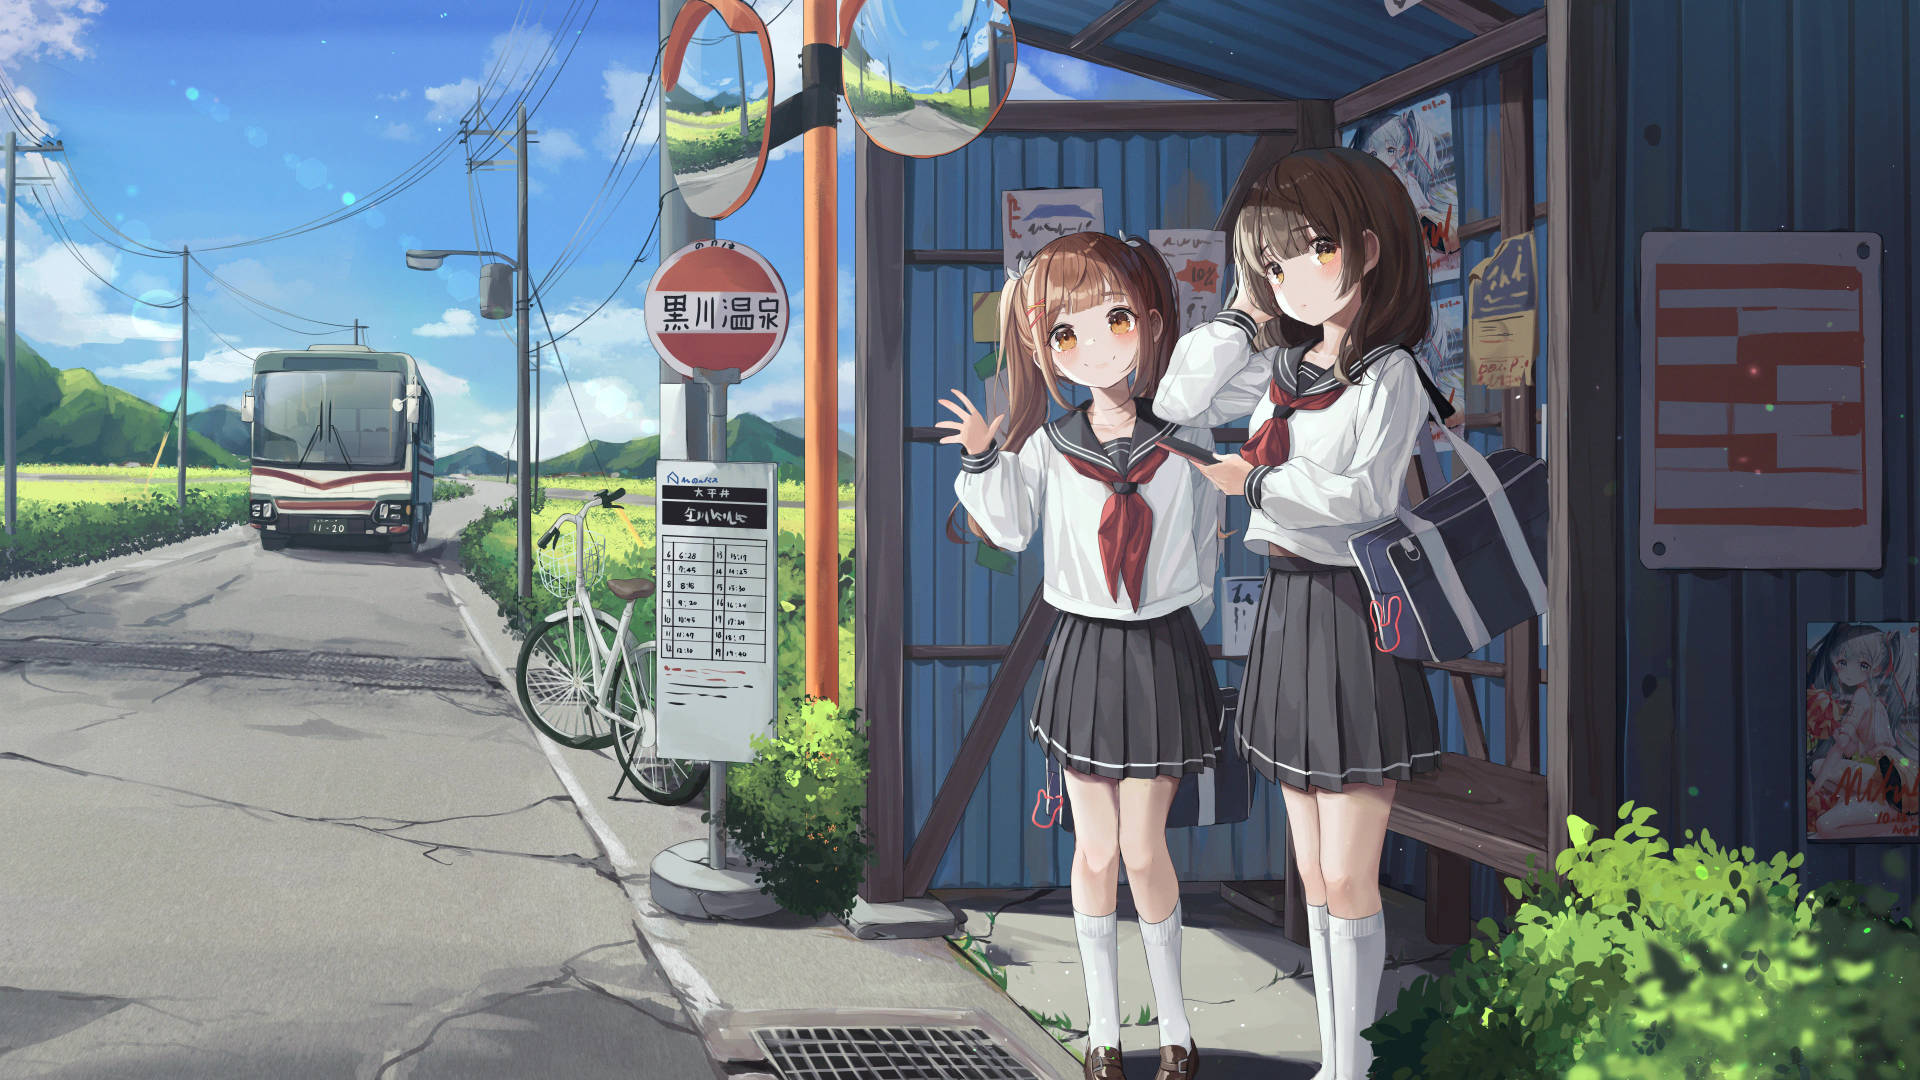 8k Anime Schoolgirls At Stop Wallpaper